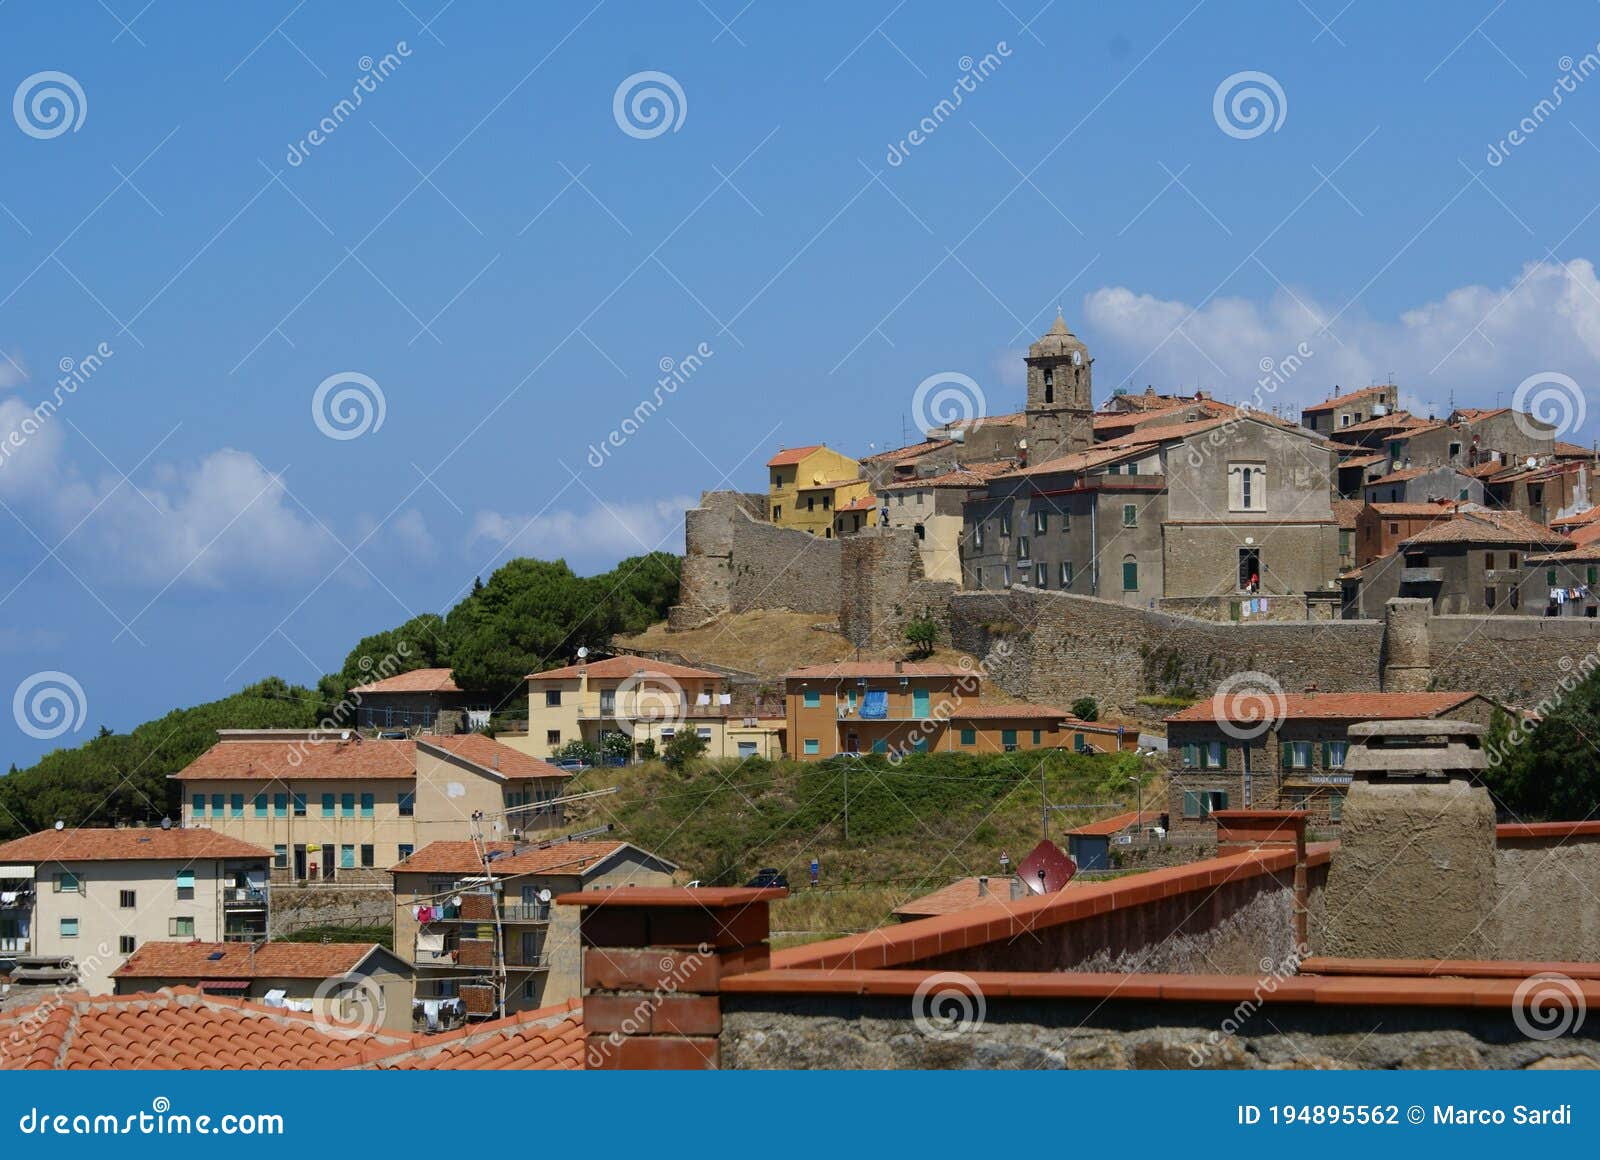 isola del giglio, tuscany italy: a view of the village giglio castello